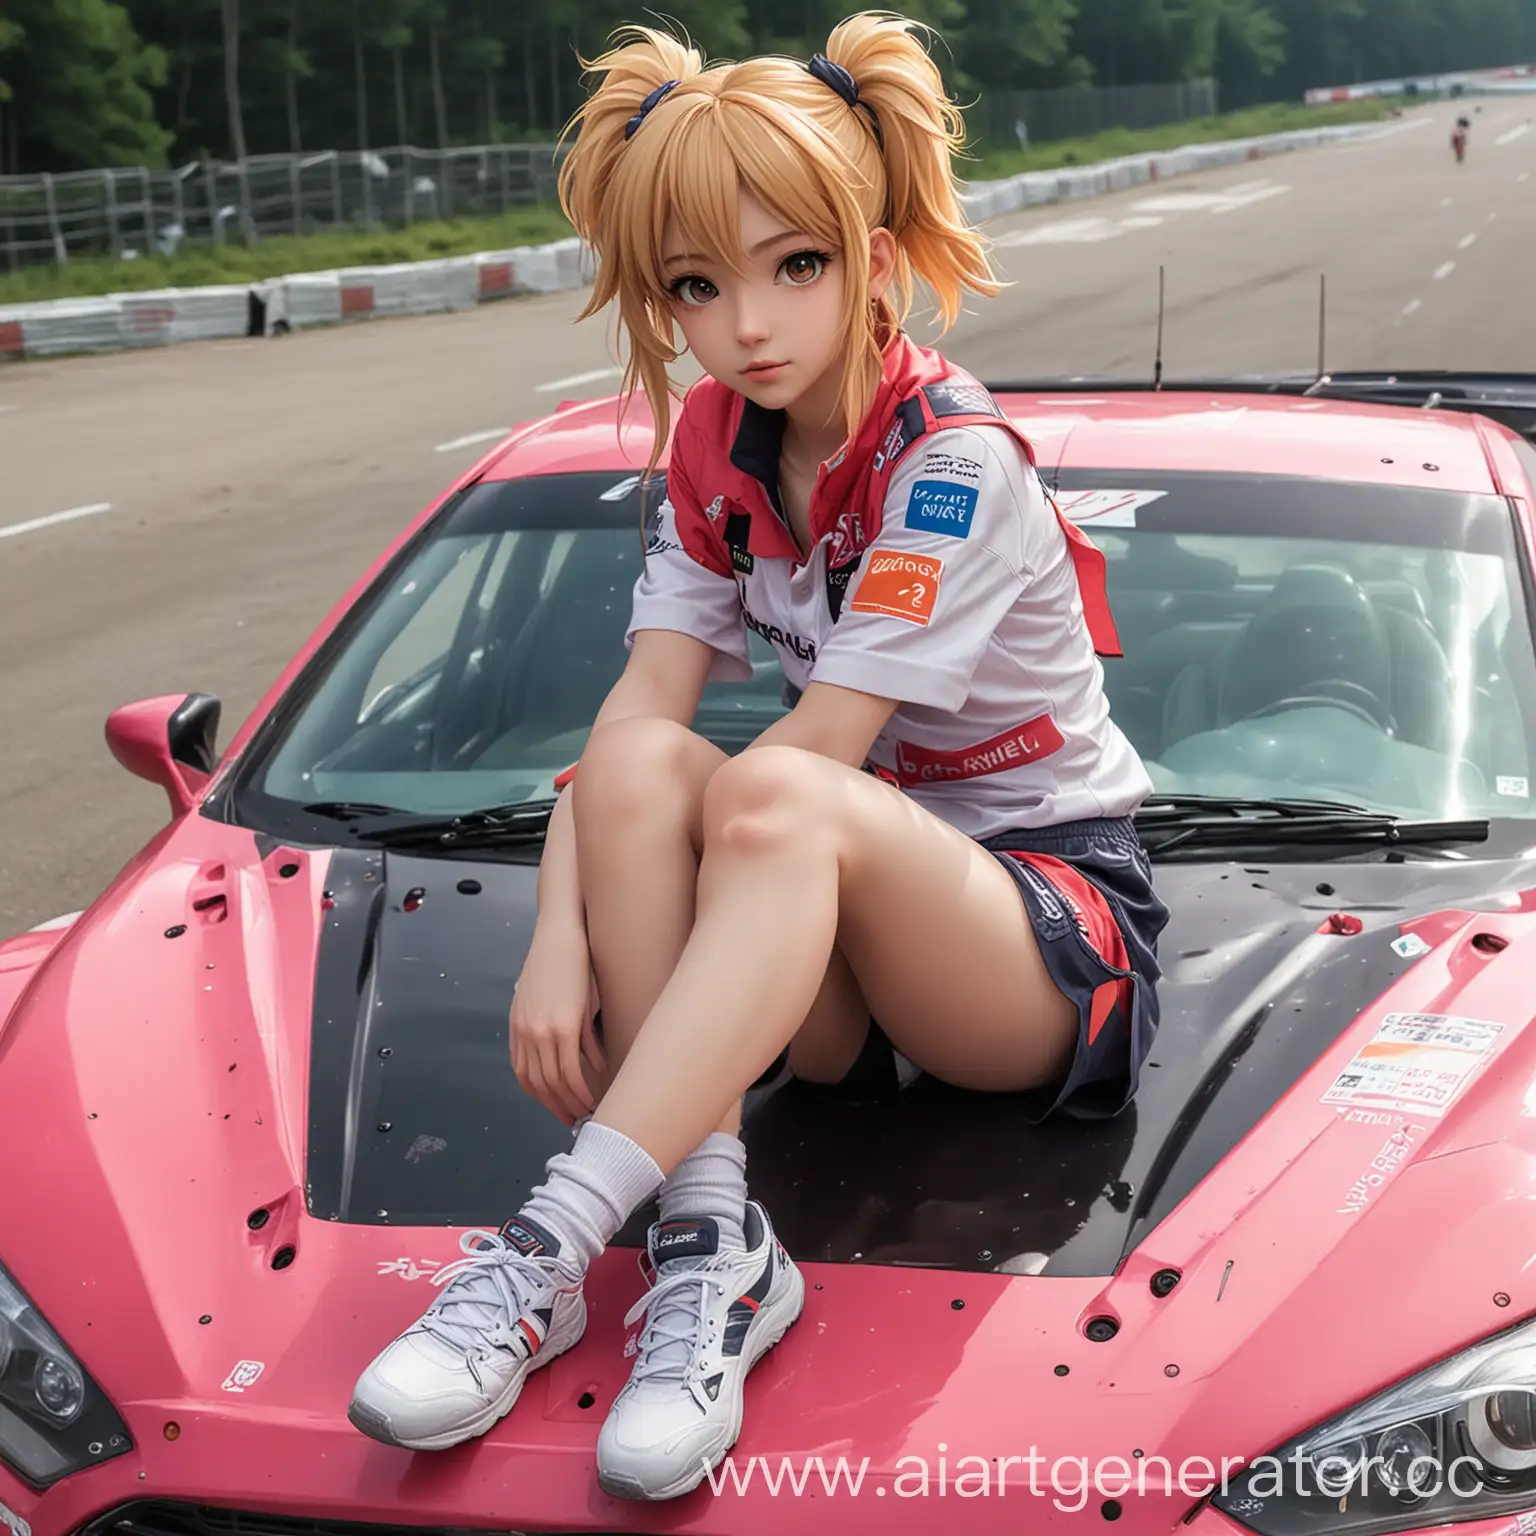 the rally car has an anime girl sitting on the hood